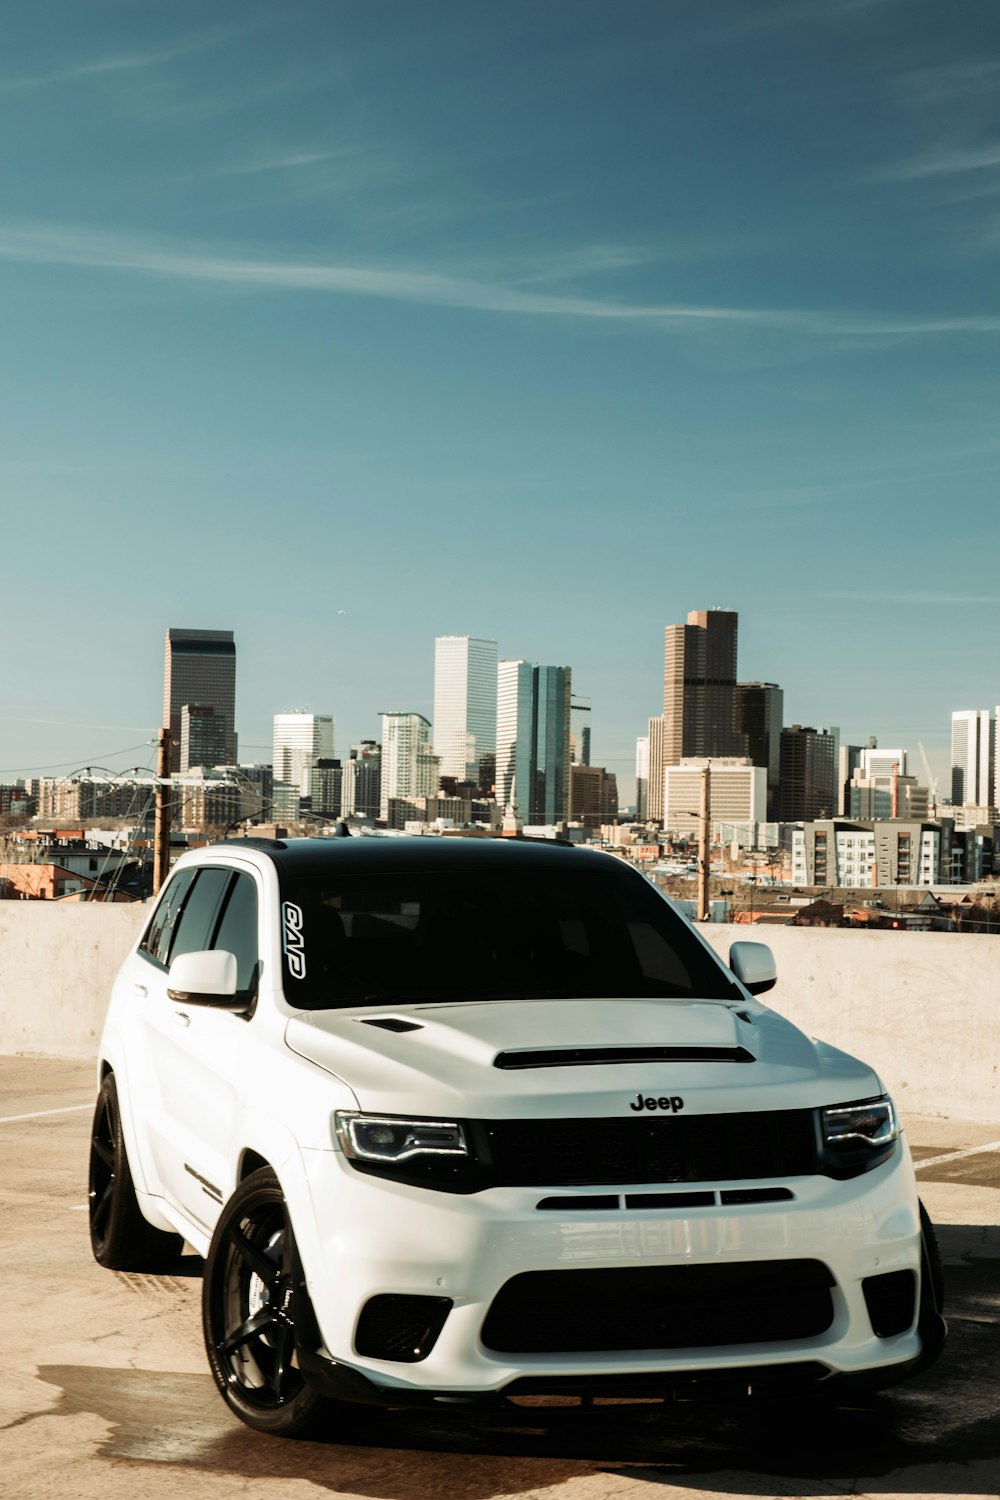 Un jeep blanco estacionado frente al horizonte de una ciudad